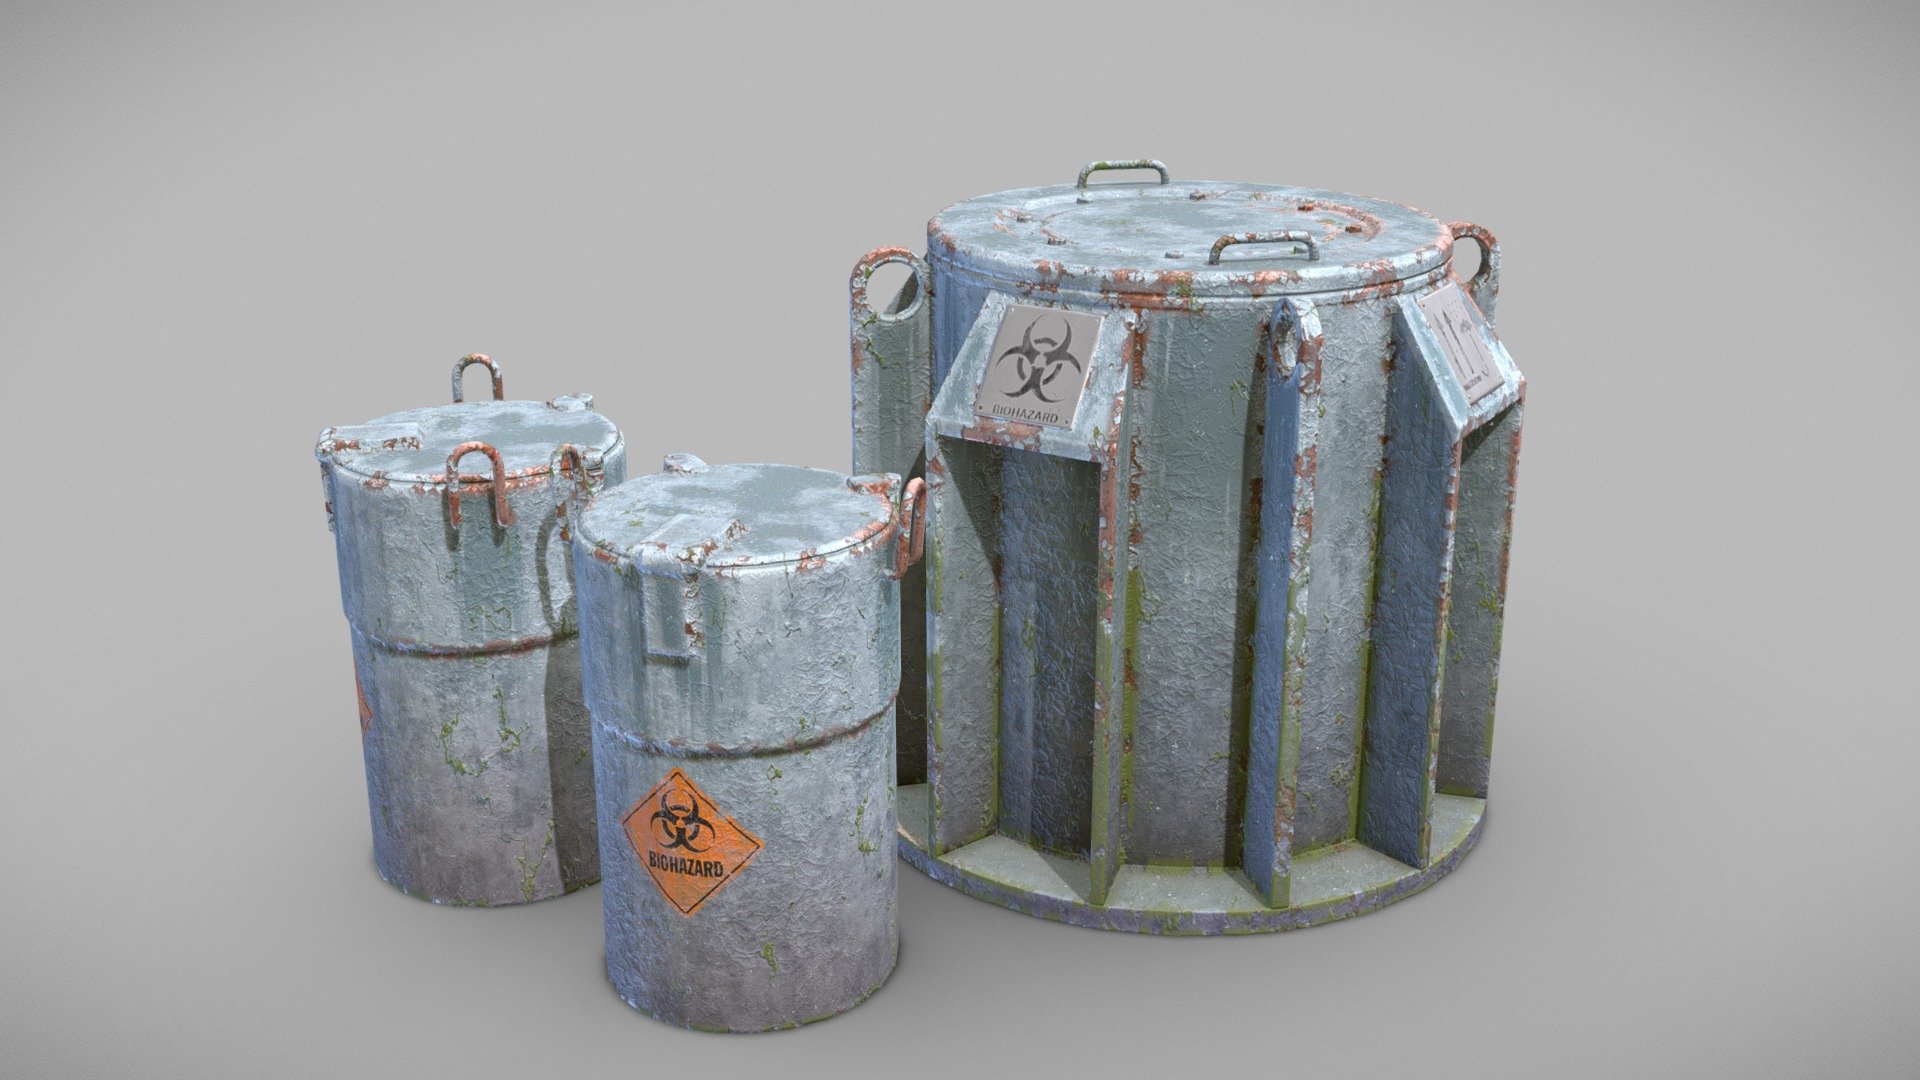 Advanced Biohazard toxic barrels from secret lab. two different models - Biohazard toxic barrels - 3D model by day9 3d model